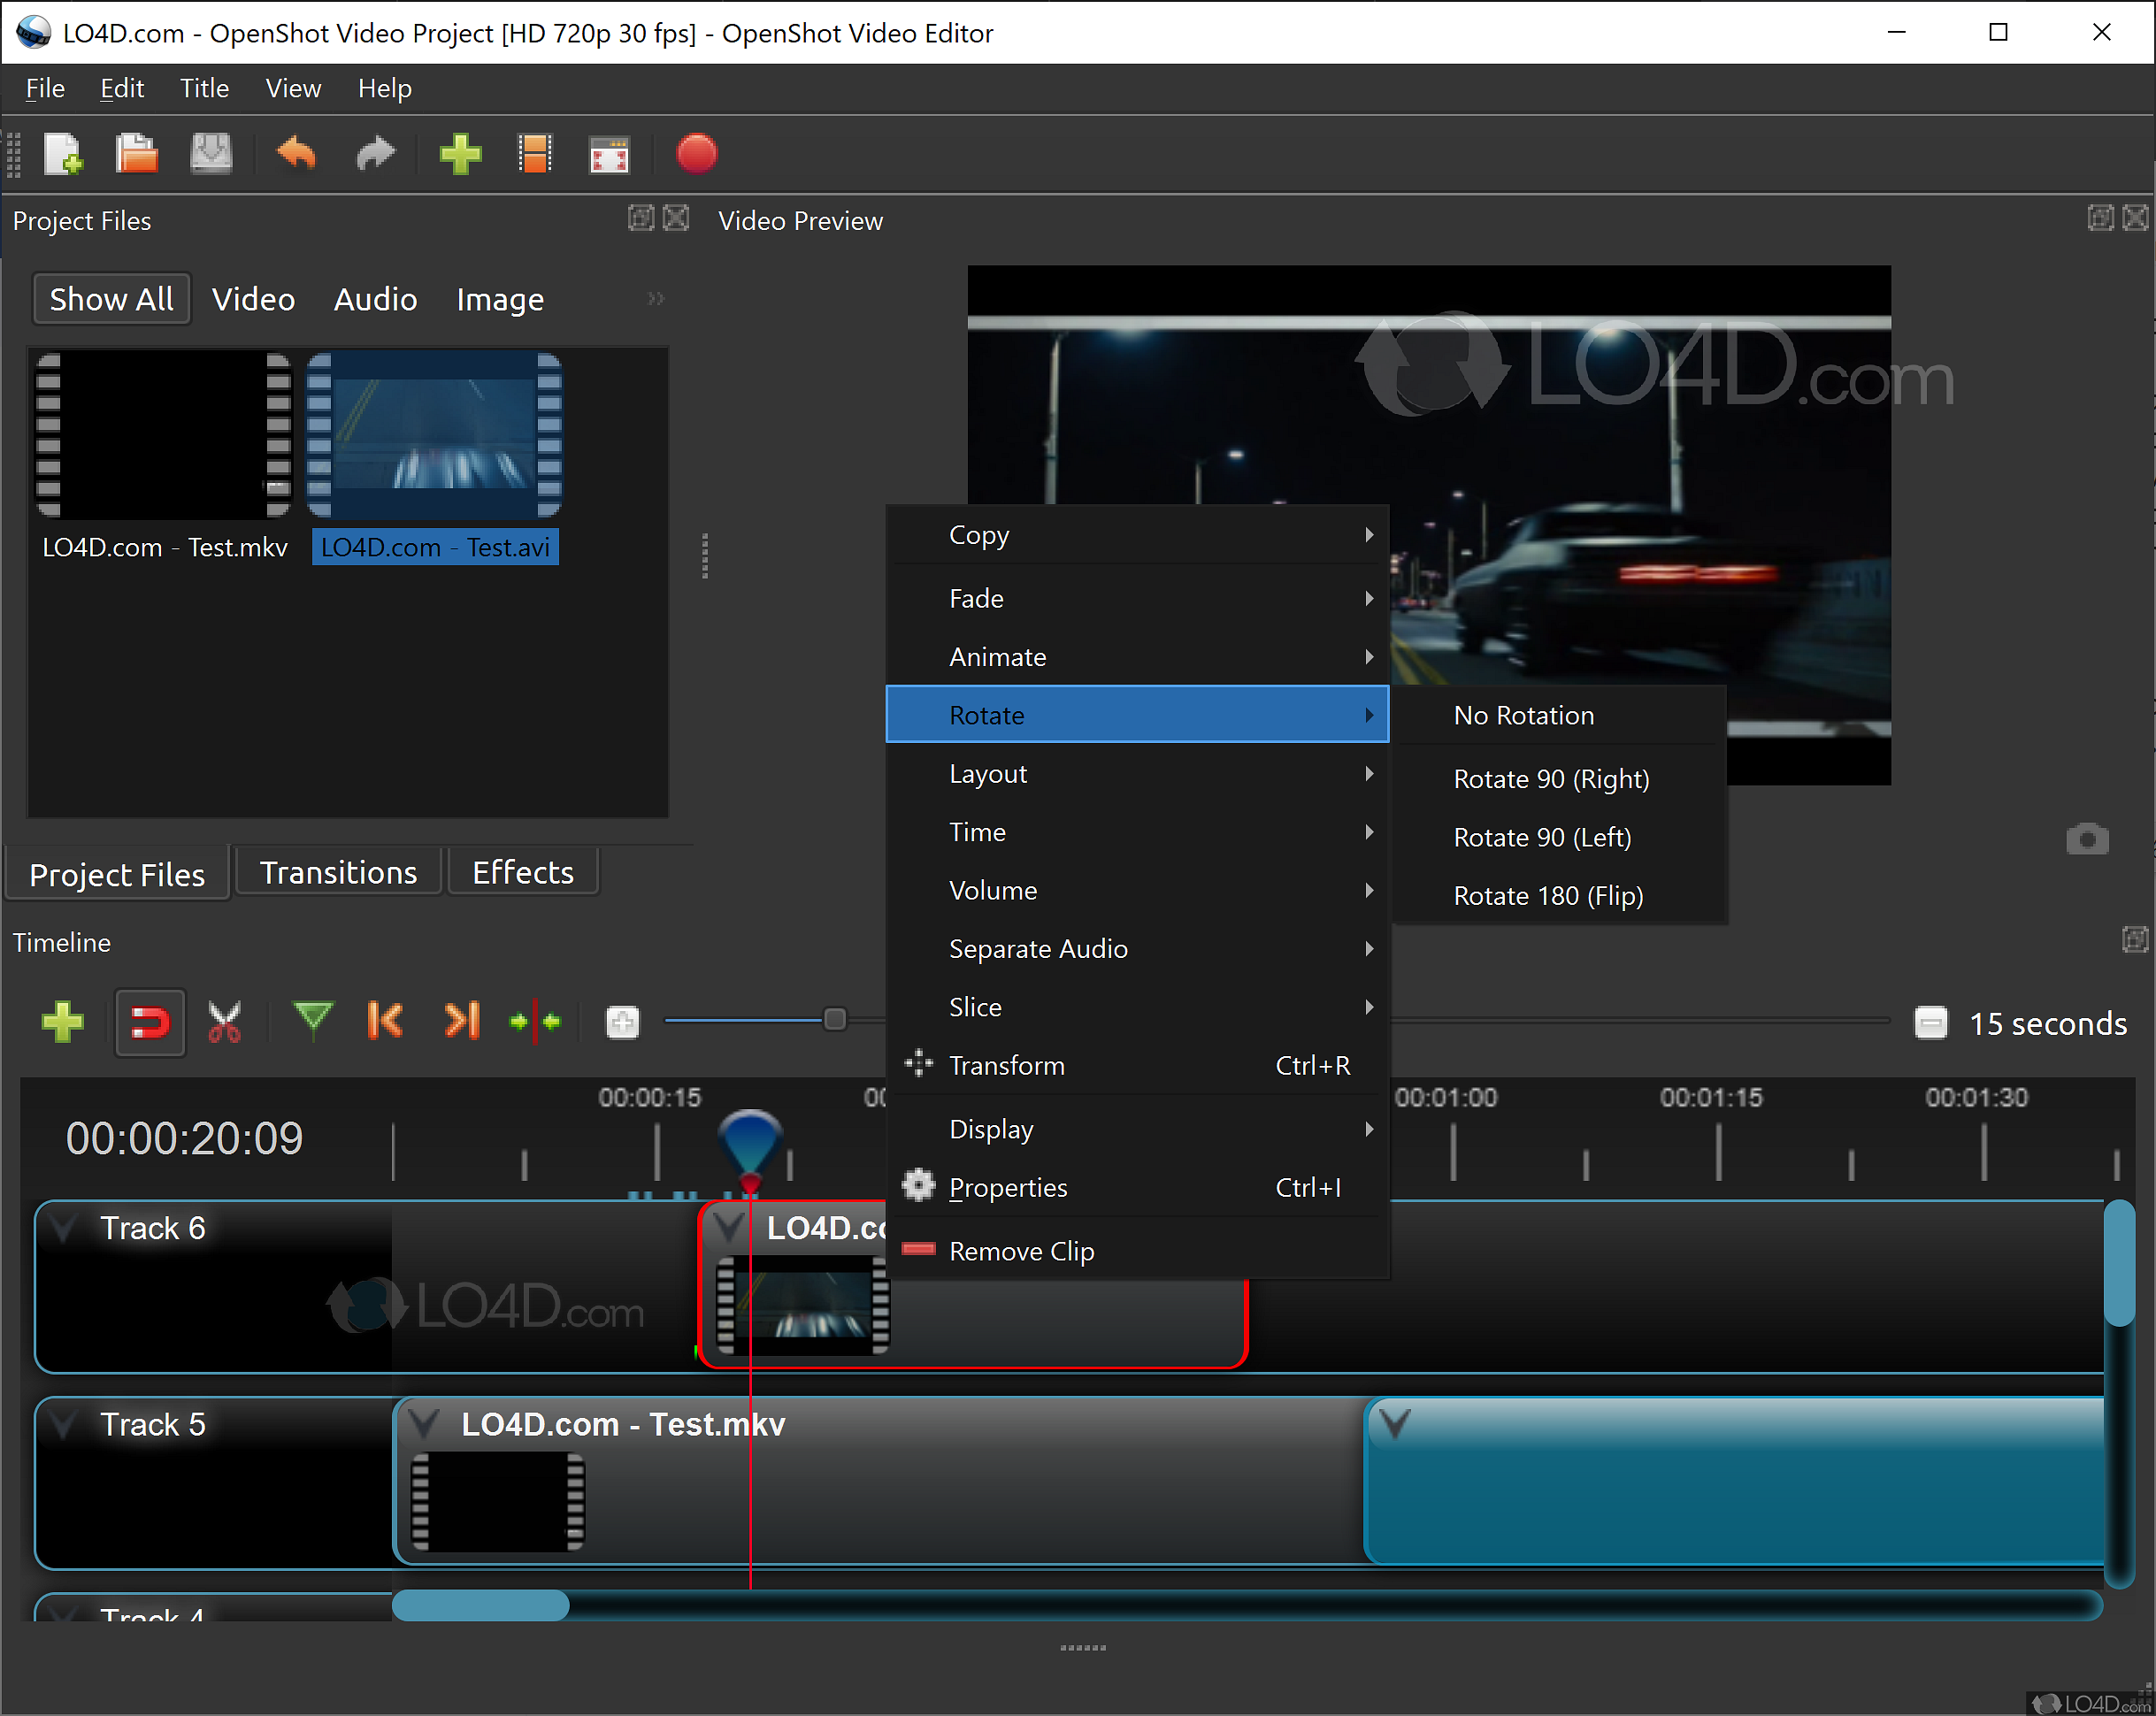 openshot video editor github